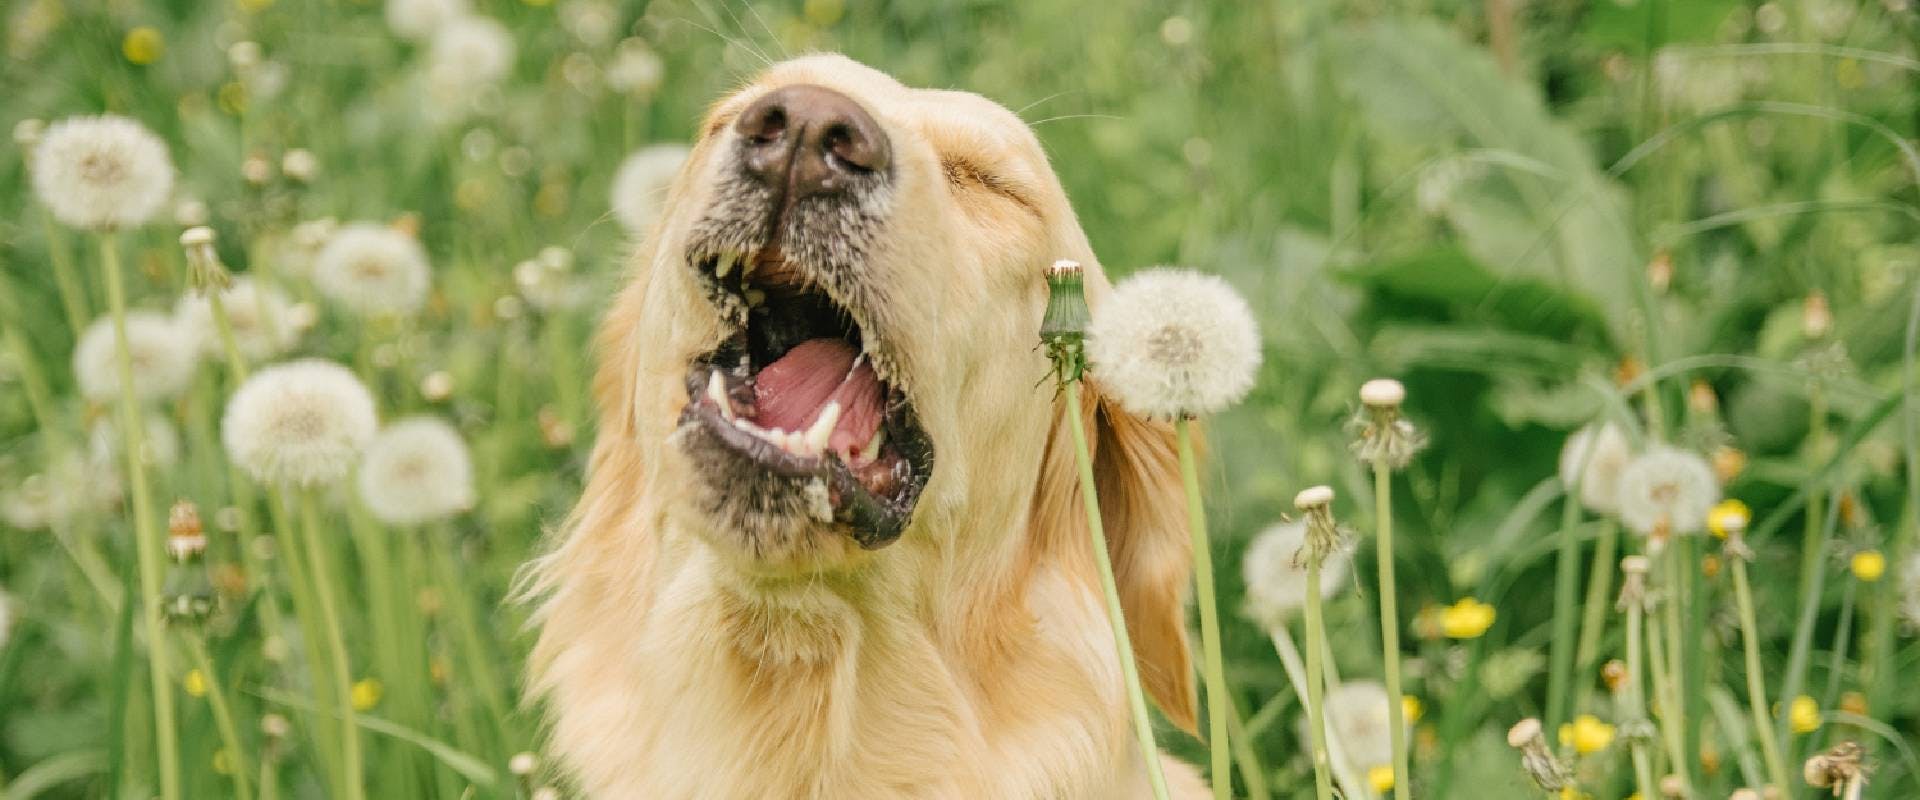 dog sneezing